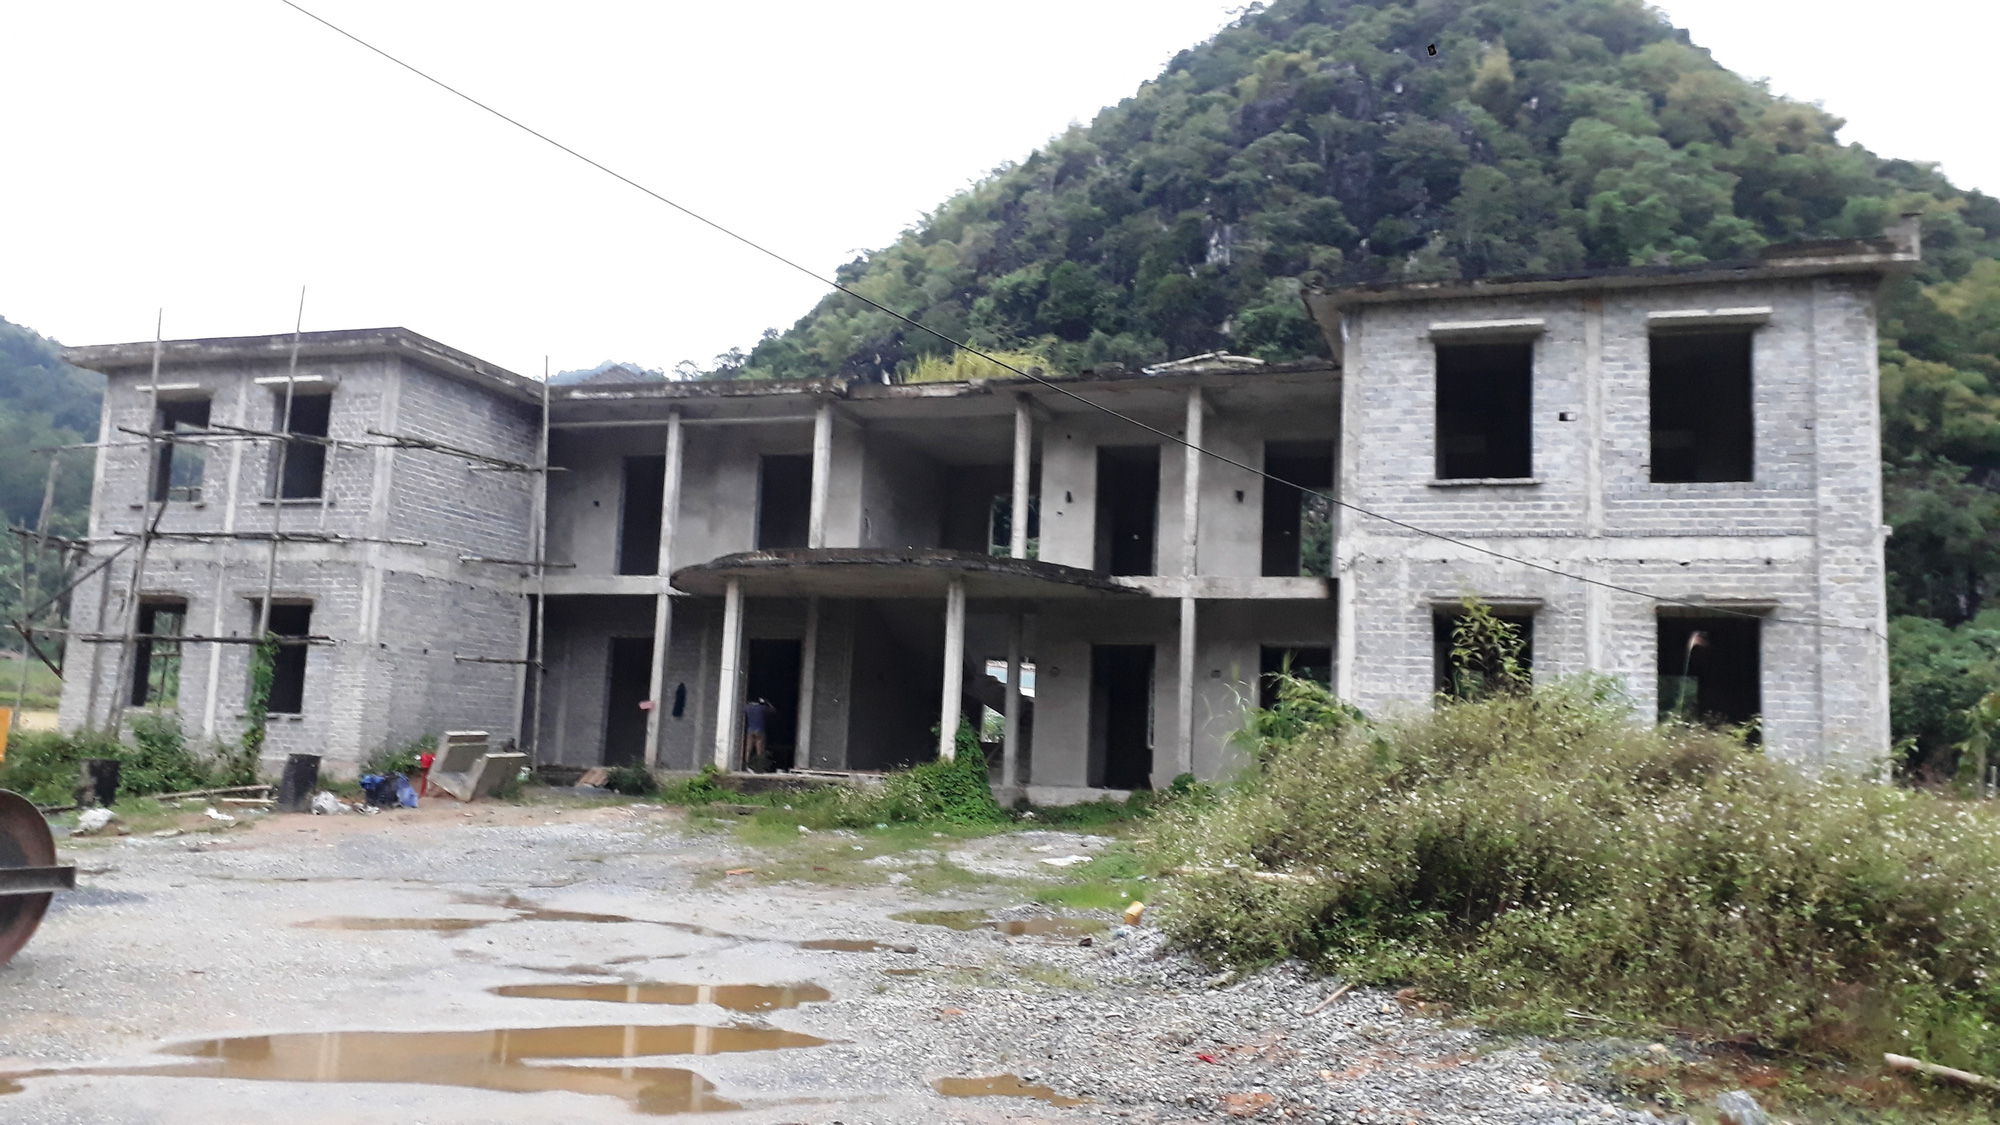 Huyện Bá Thước, Thanh Hóa: Hàng loạt xã vùng cao không có công sở làm việc